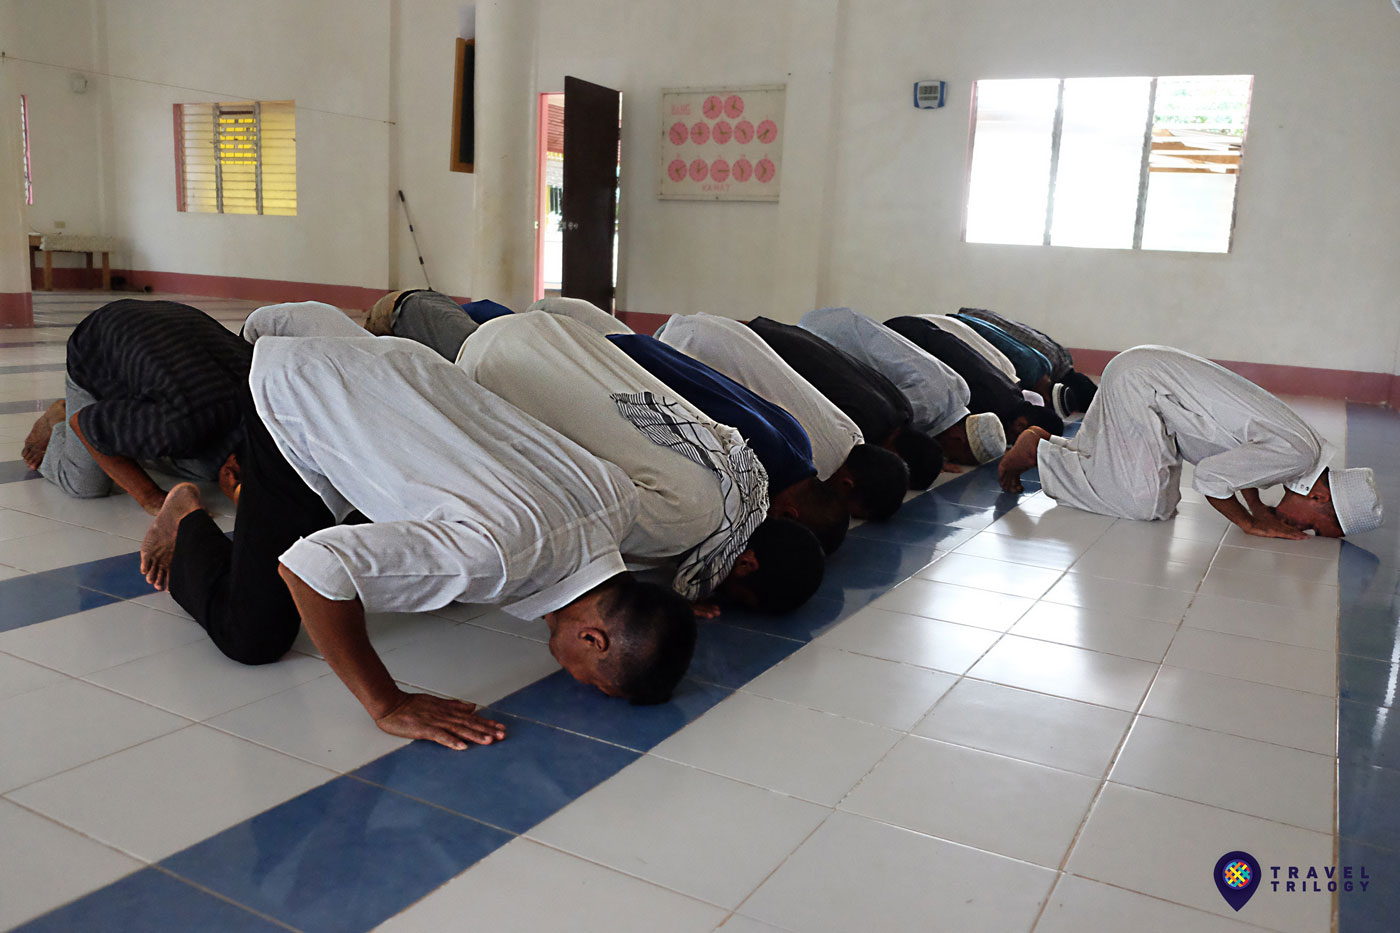 muslim praying